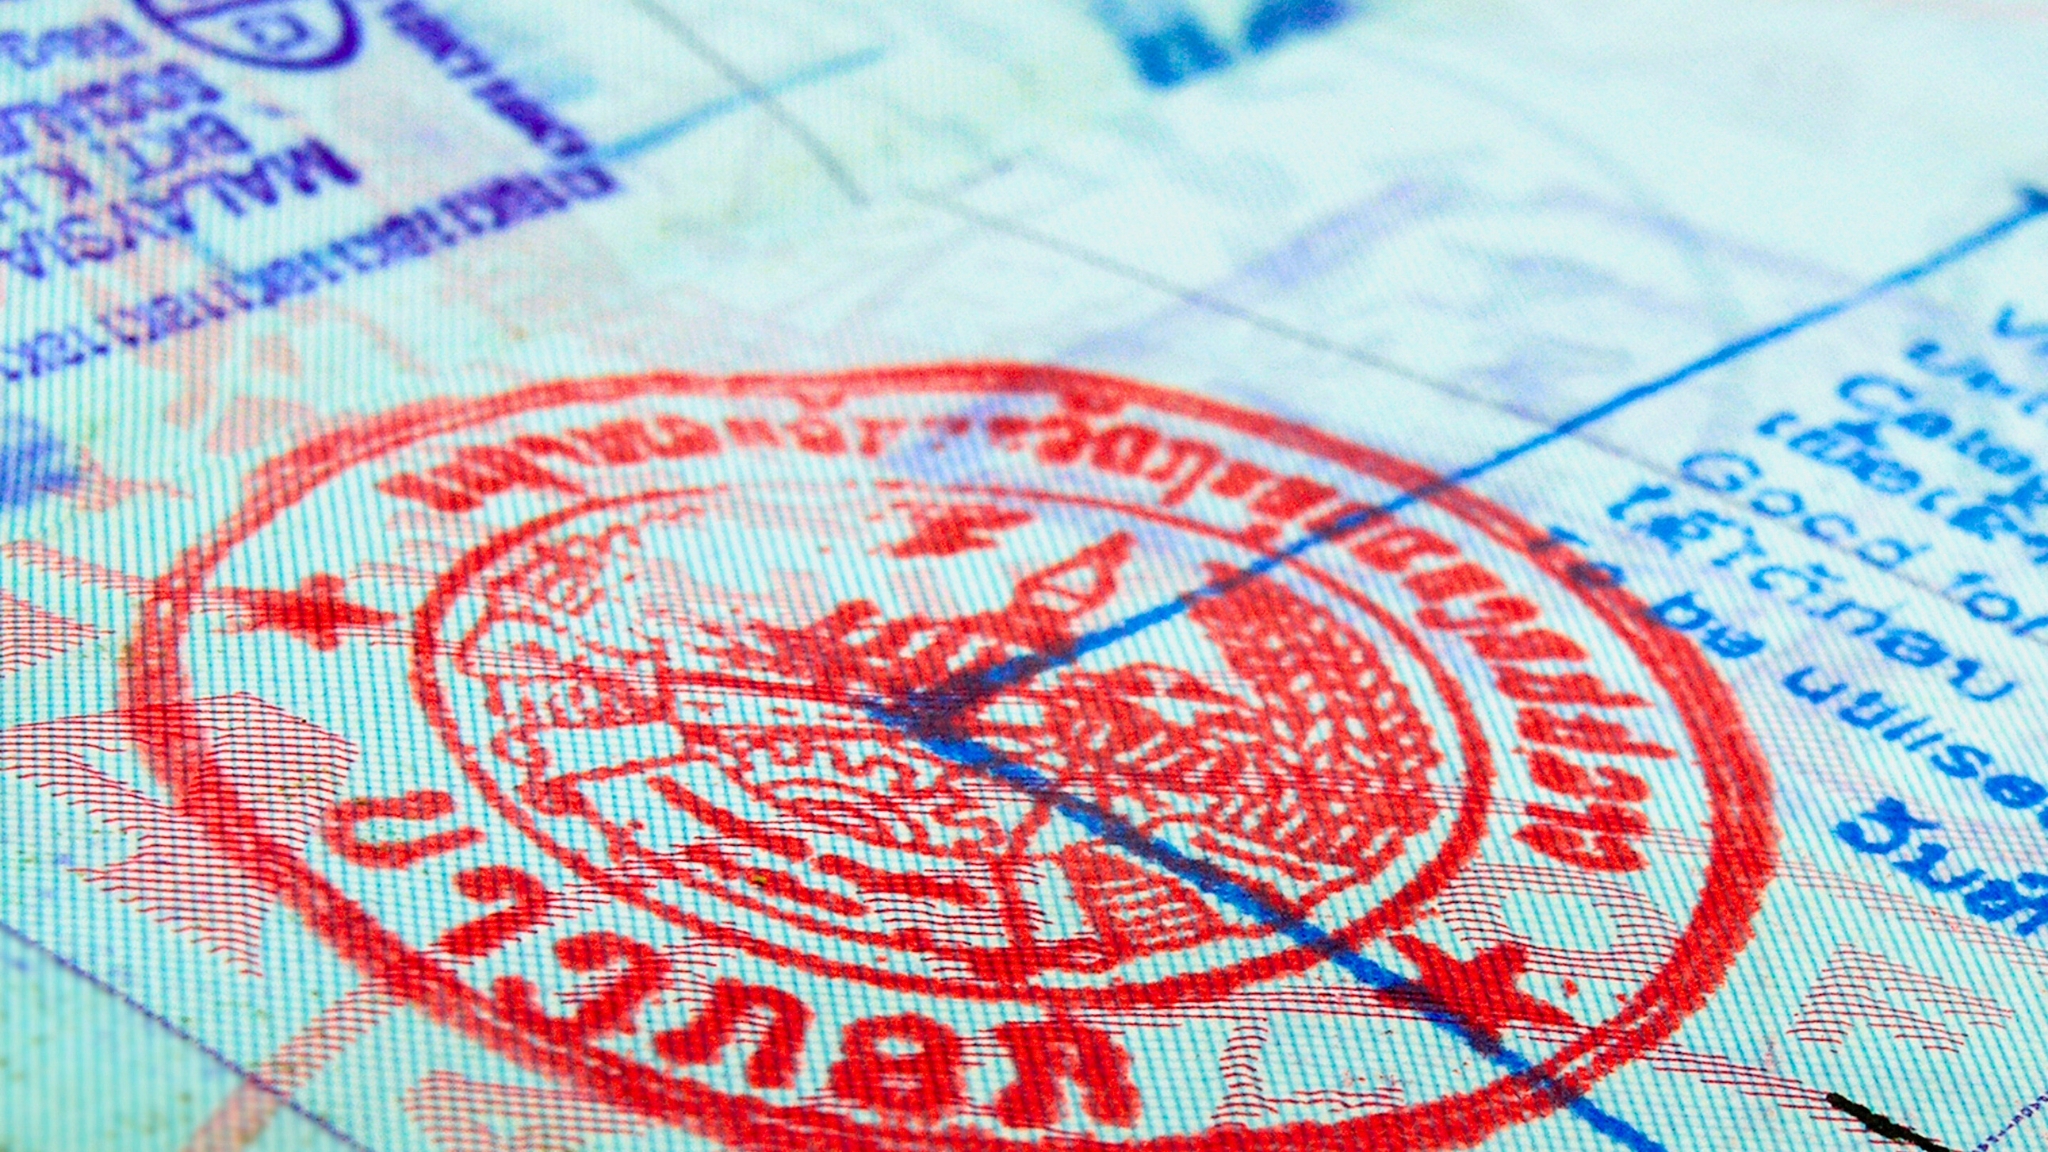 Laos Visa Stamp